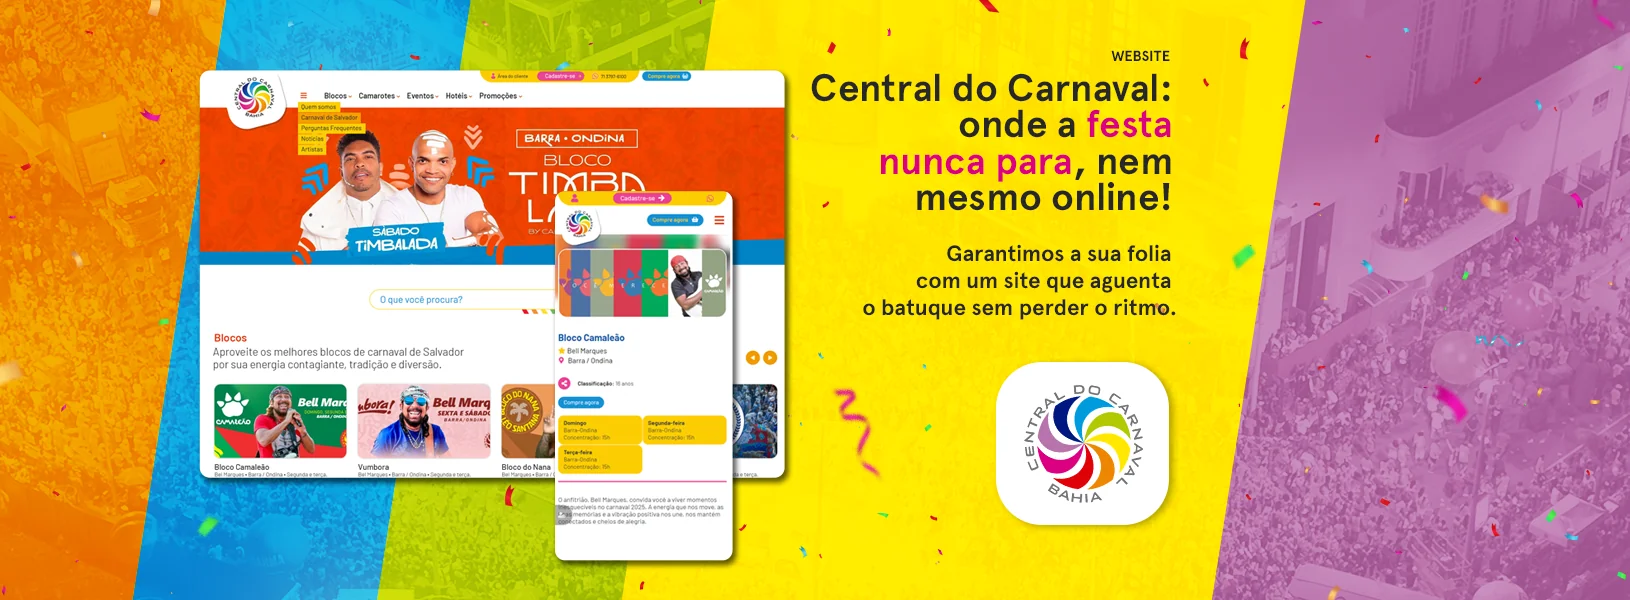 Central do Carnaval - Website